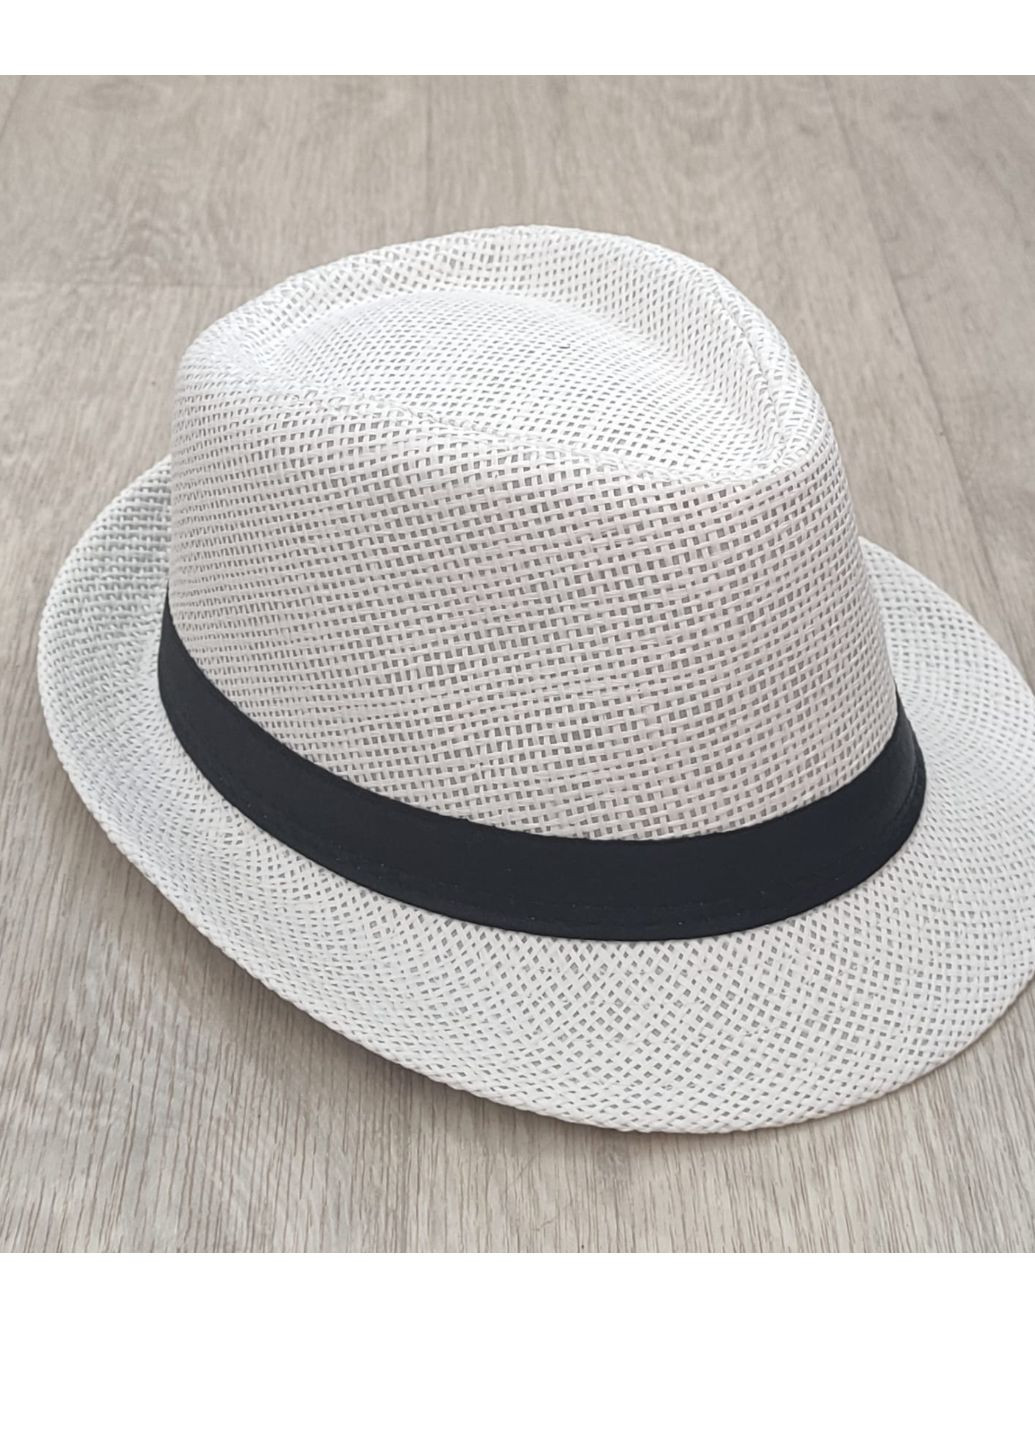 Летняя соломенная шляпа трилби белий 56-58р (957) No Brand (259771387)